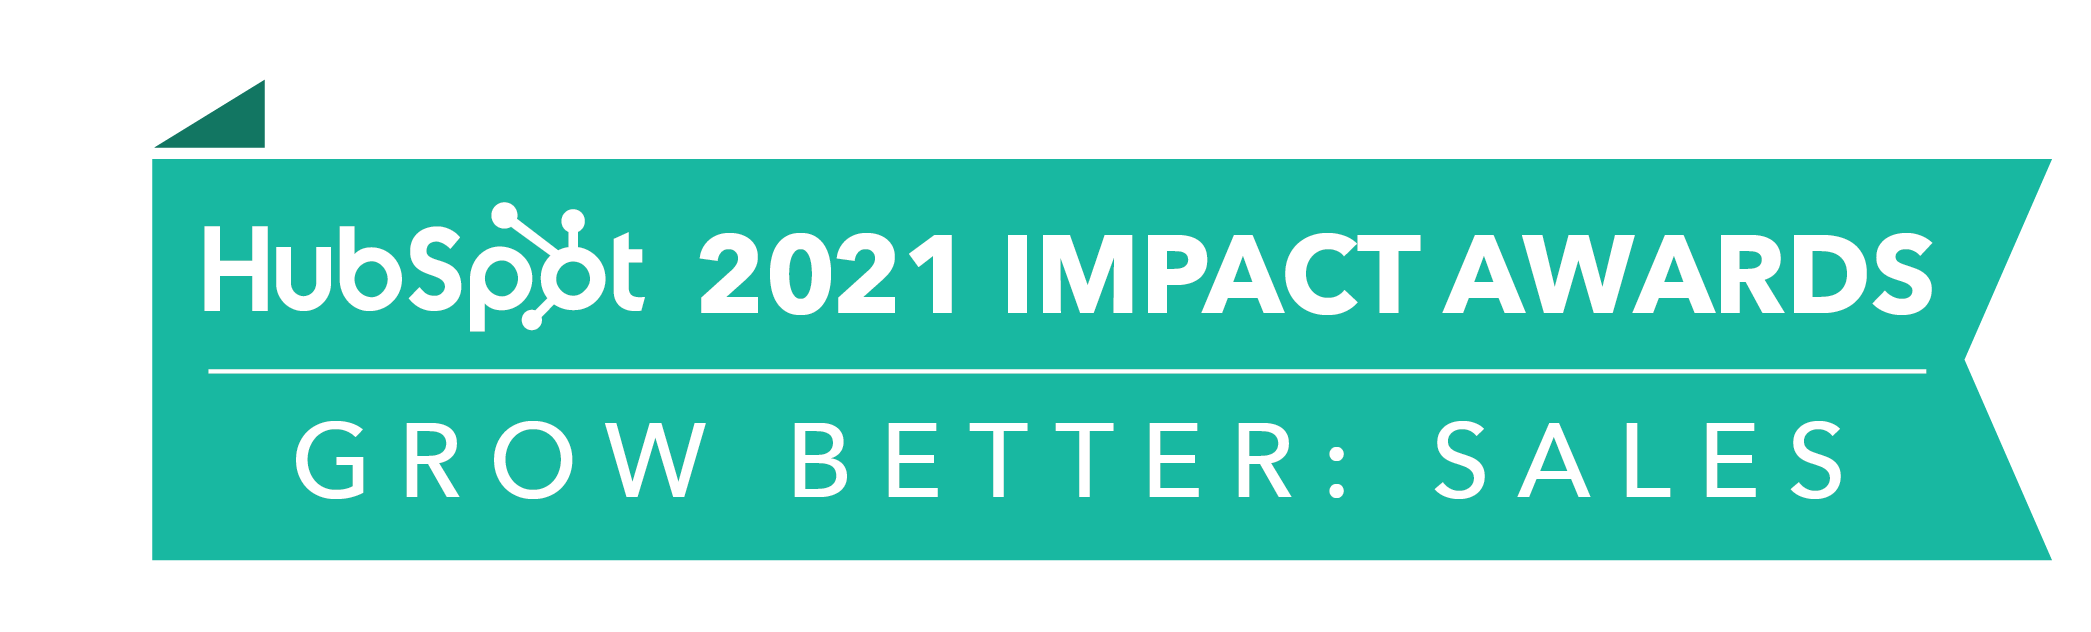 HubSpot_ImpactAwards_2021_GBSales2-1